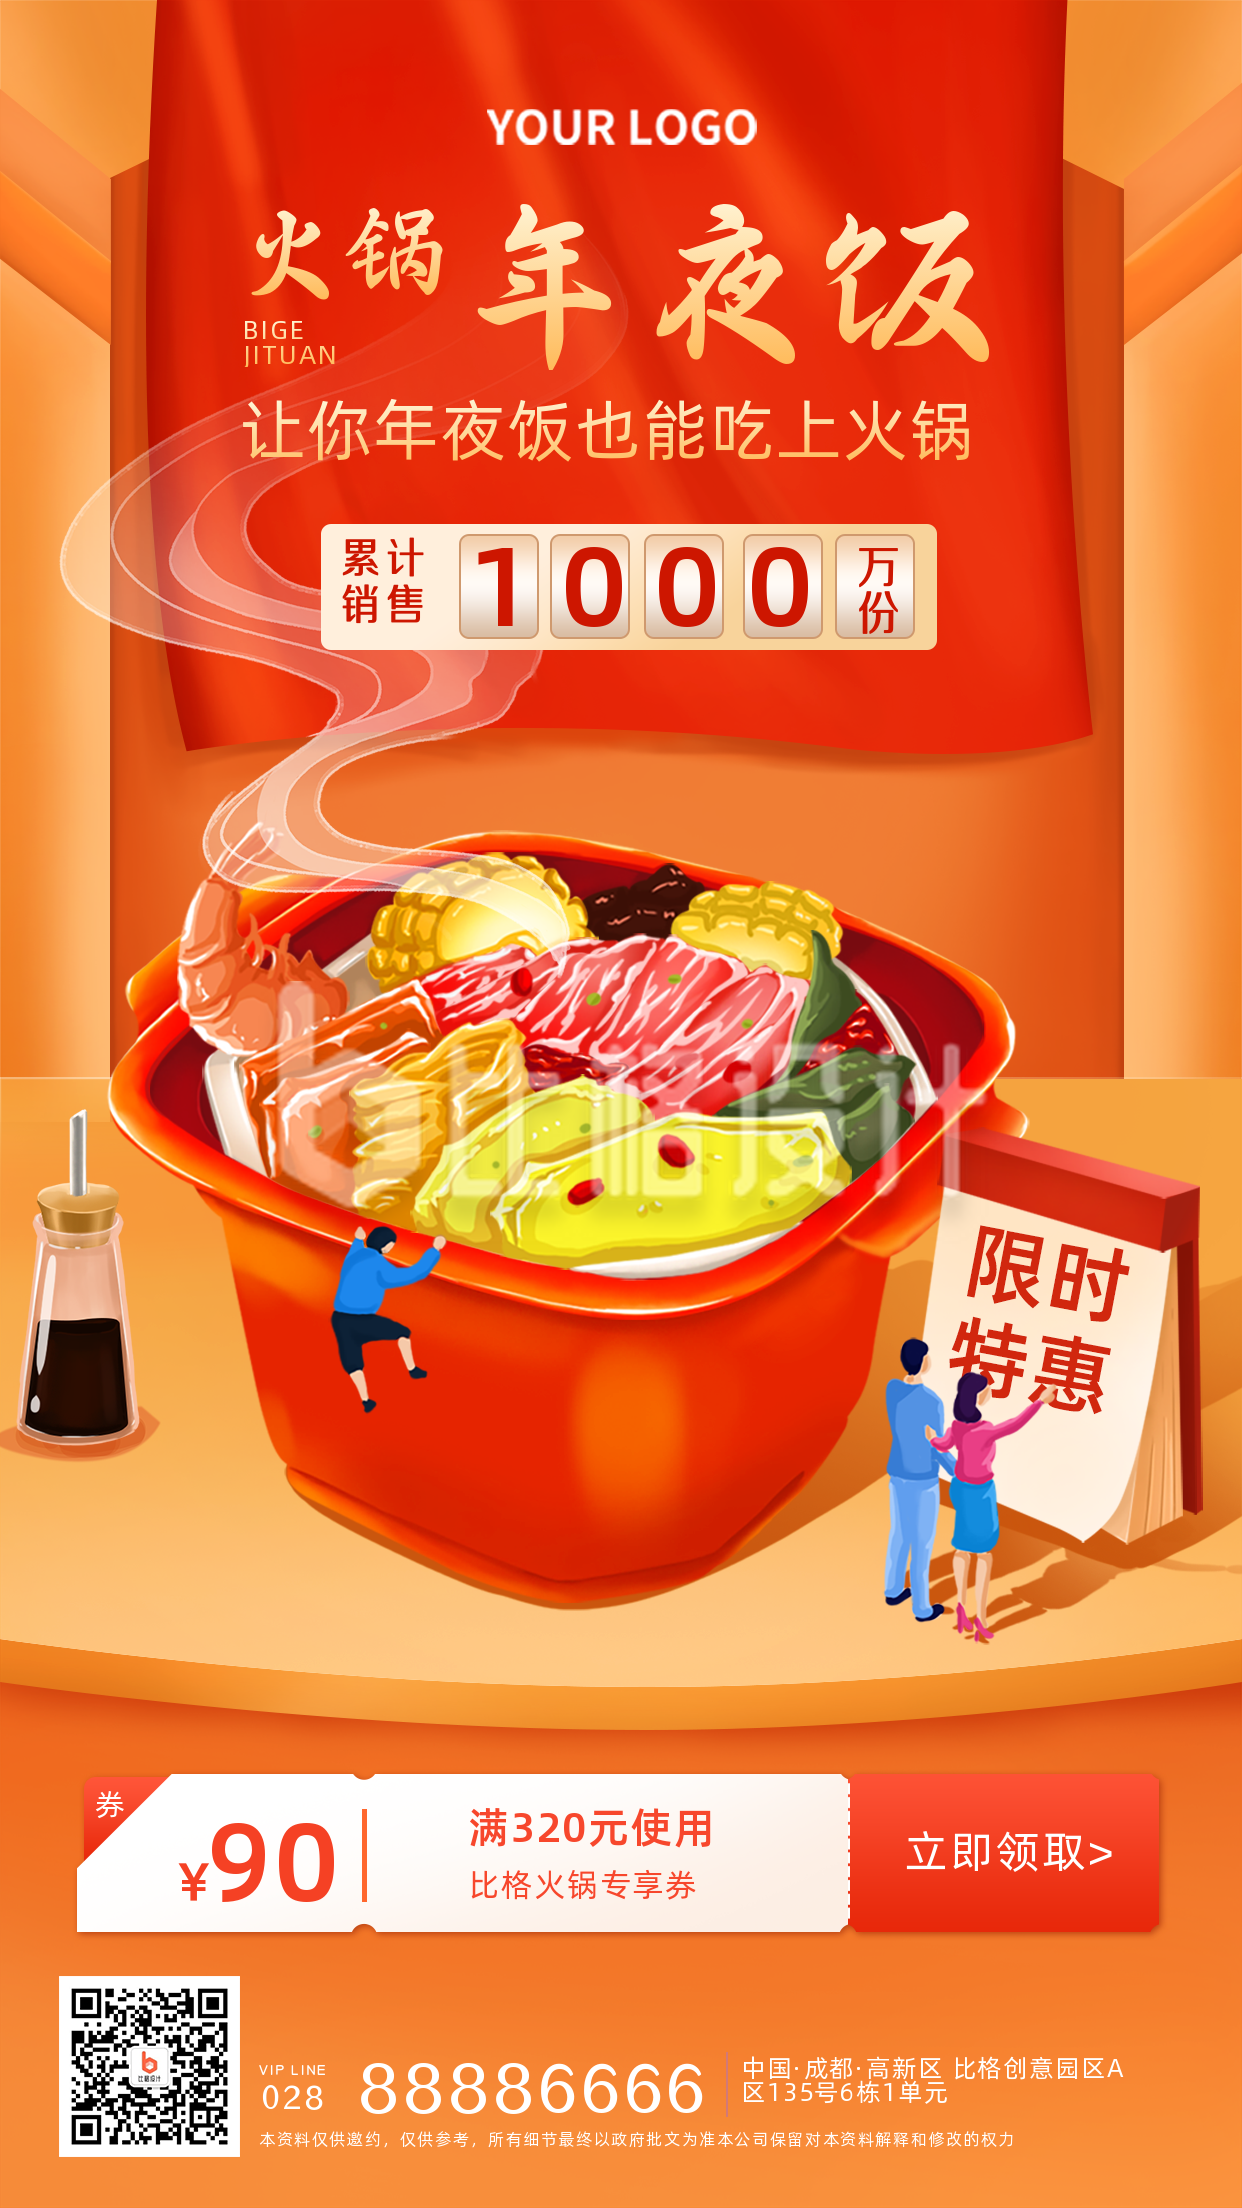 过年年夜饭自热火锅销售促销优惠活动手绘风宣传推广手机海报